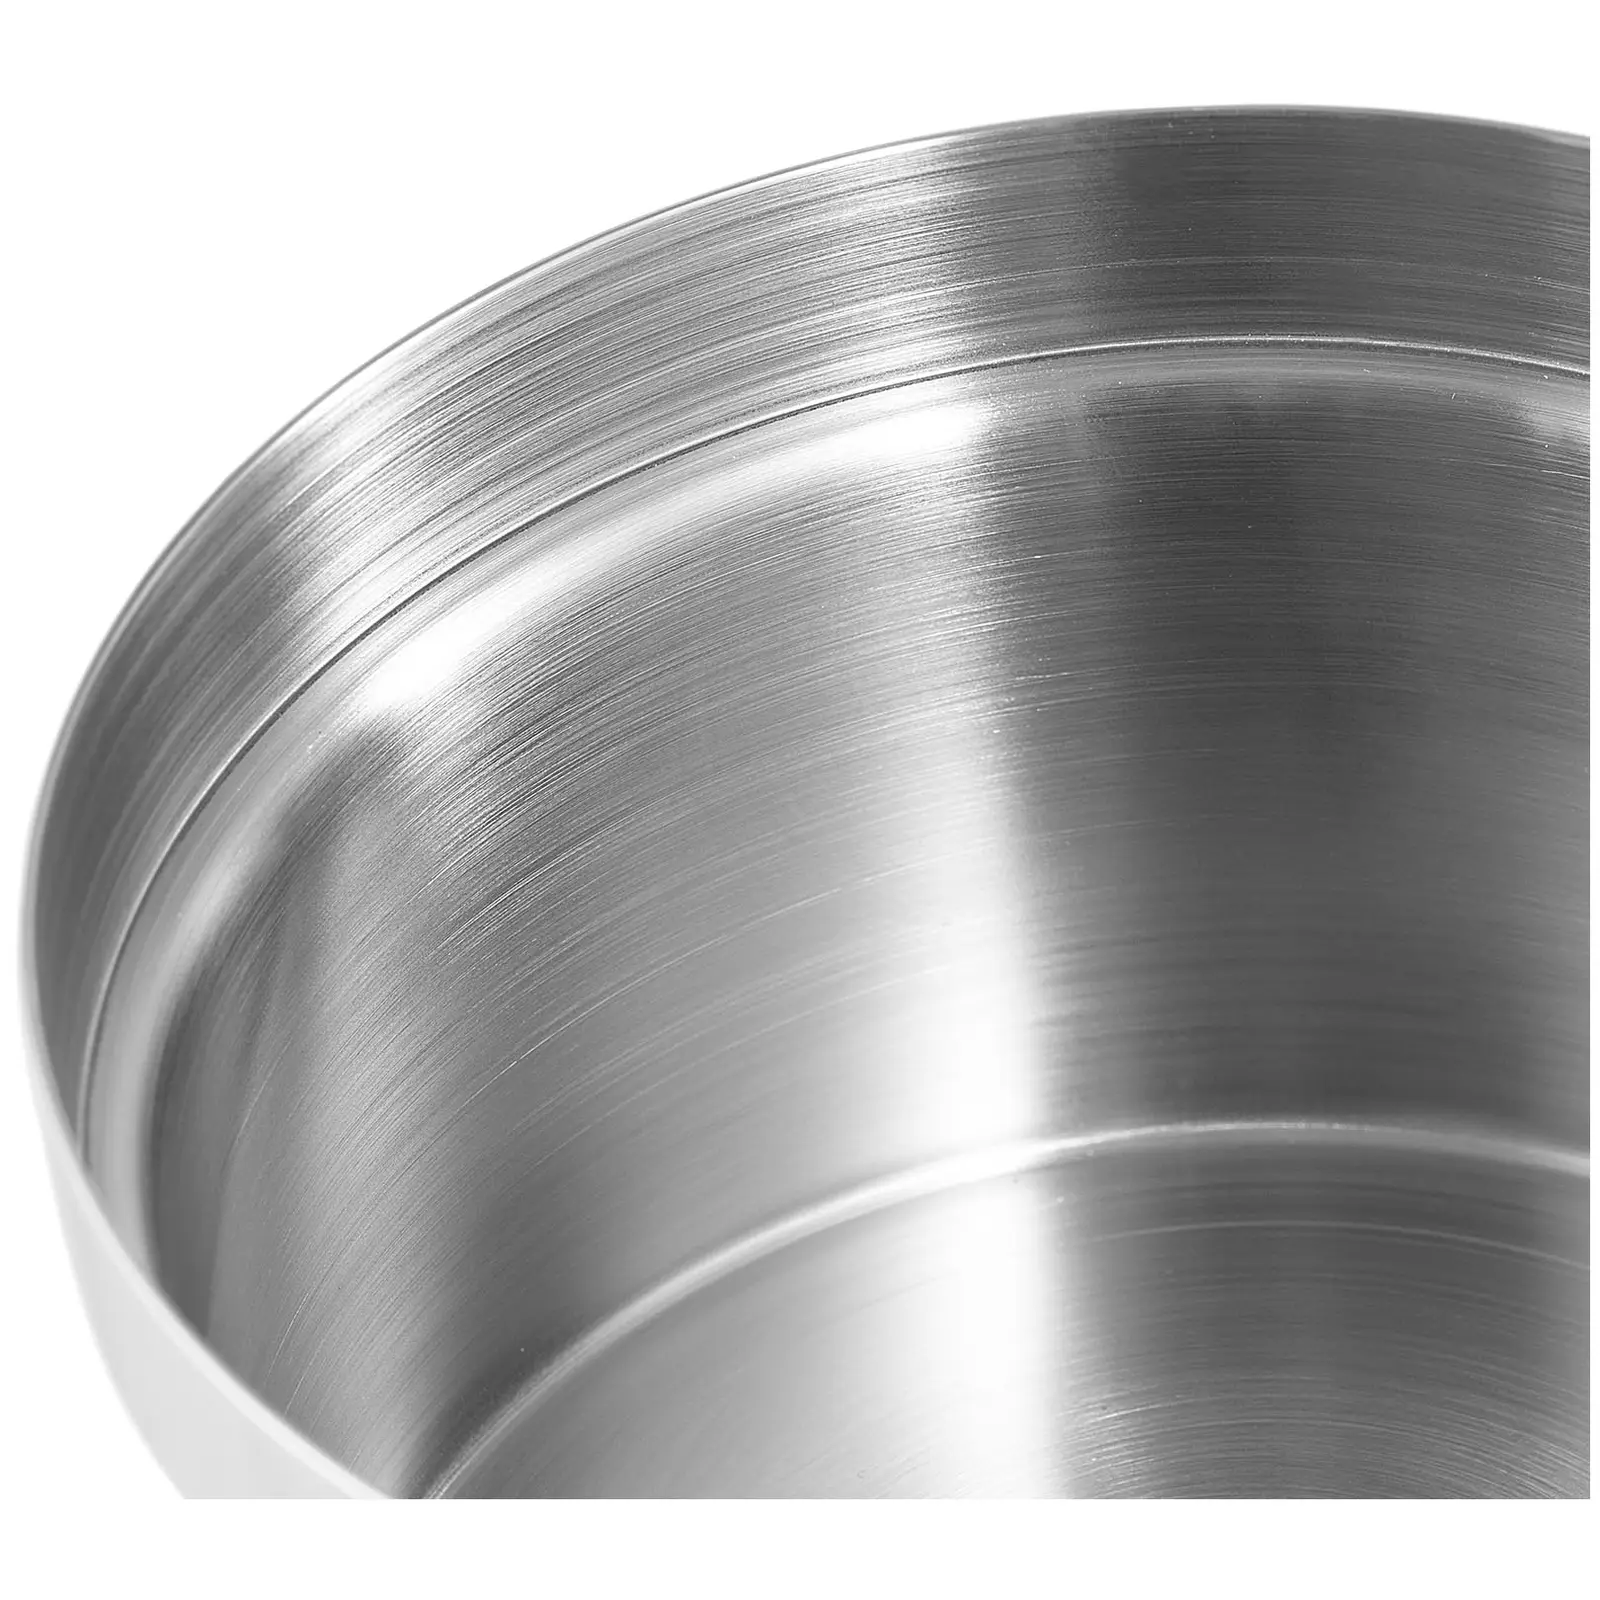 Skål i rustfritt stål - ⌀230 x 135 mm